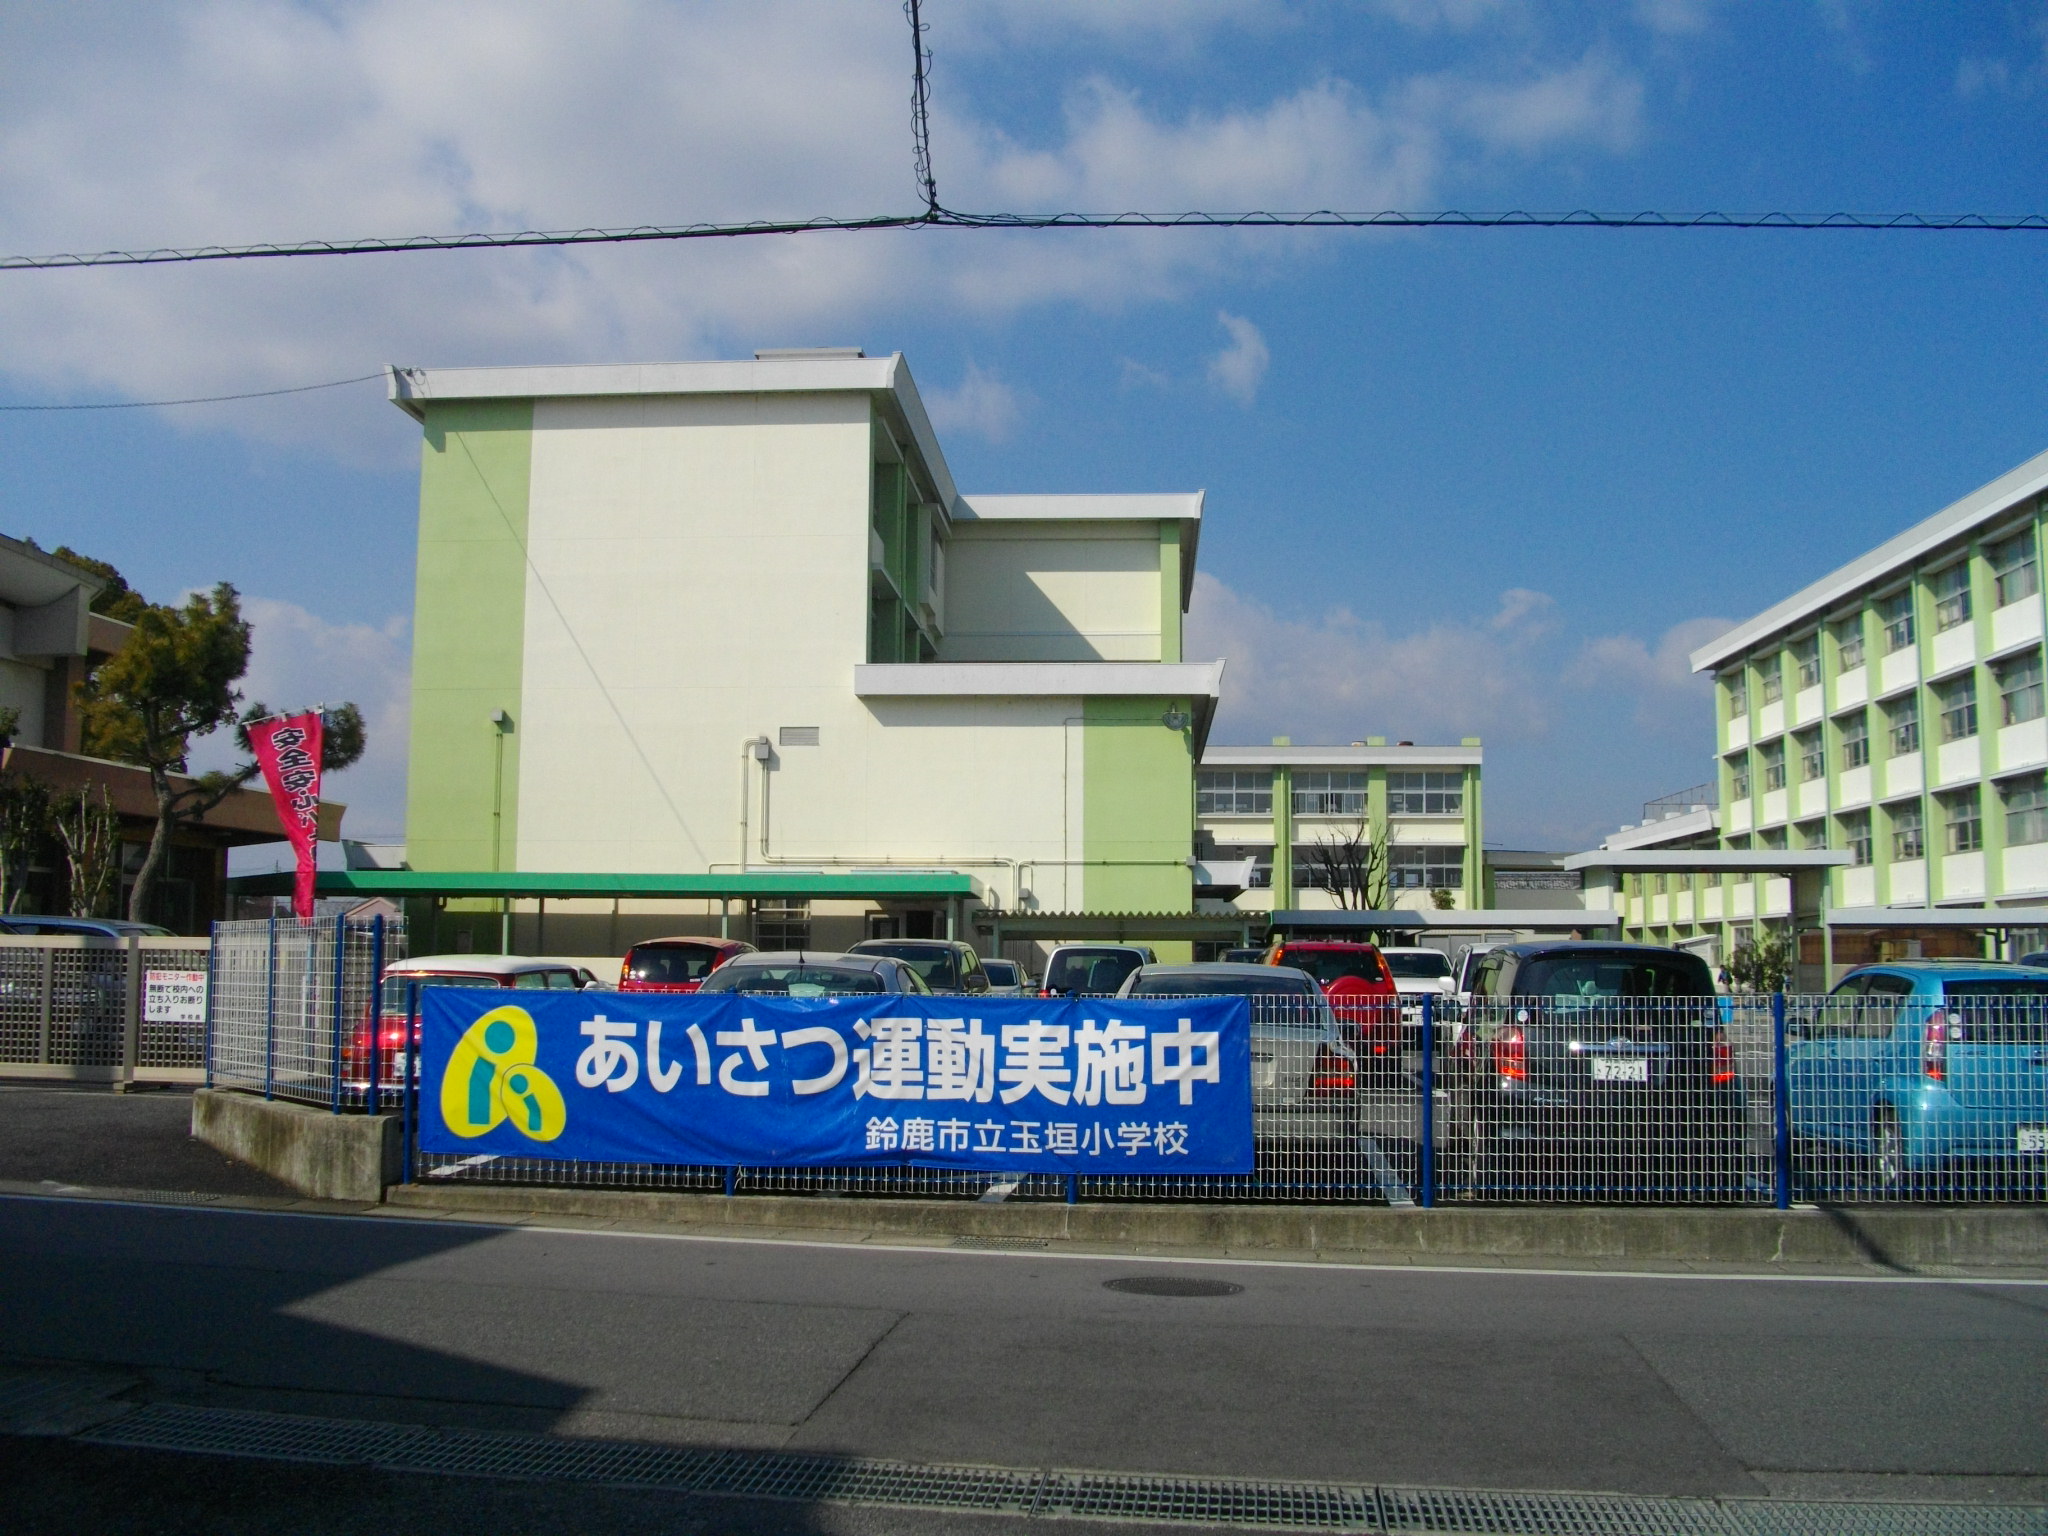 Primary school. 300m until Suzuka Municipal Tamagaki elementary school (elementary school)